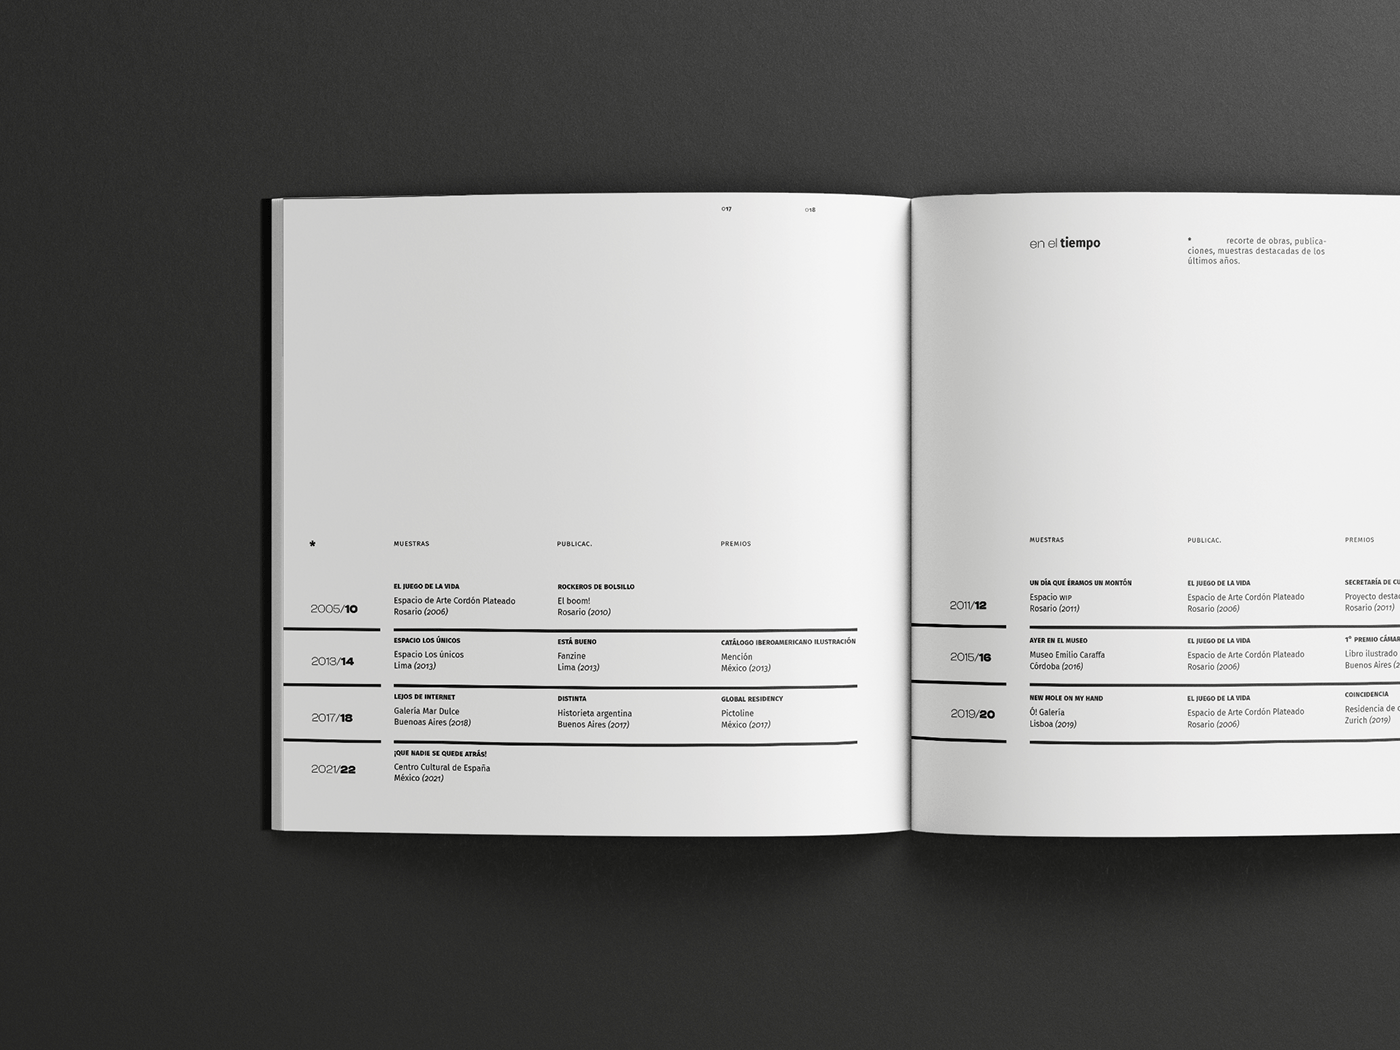 book diseño editorial Glosario grilla ilustracion indice libro linea tiempo tipografia Tipos typo typography  